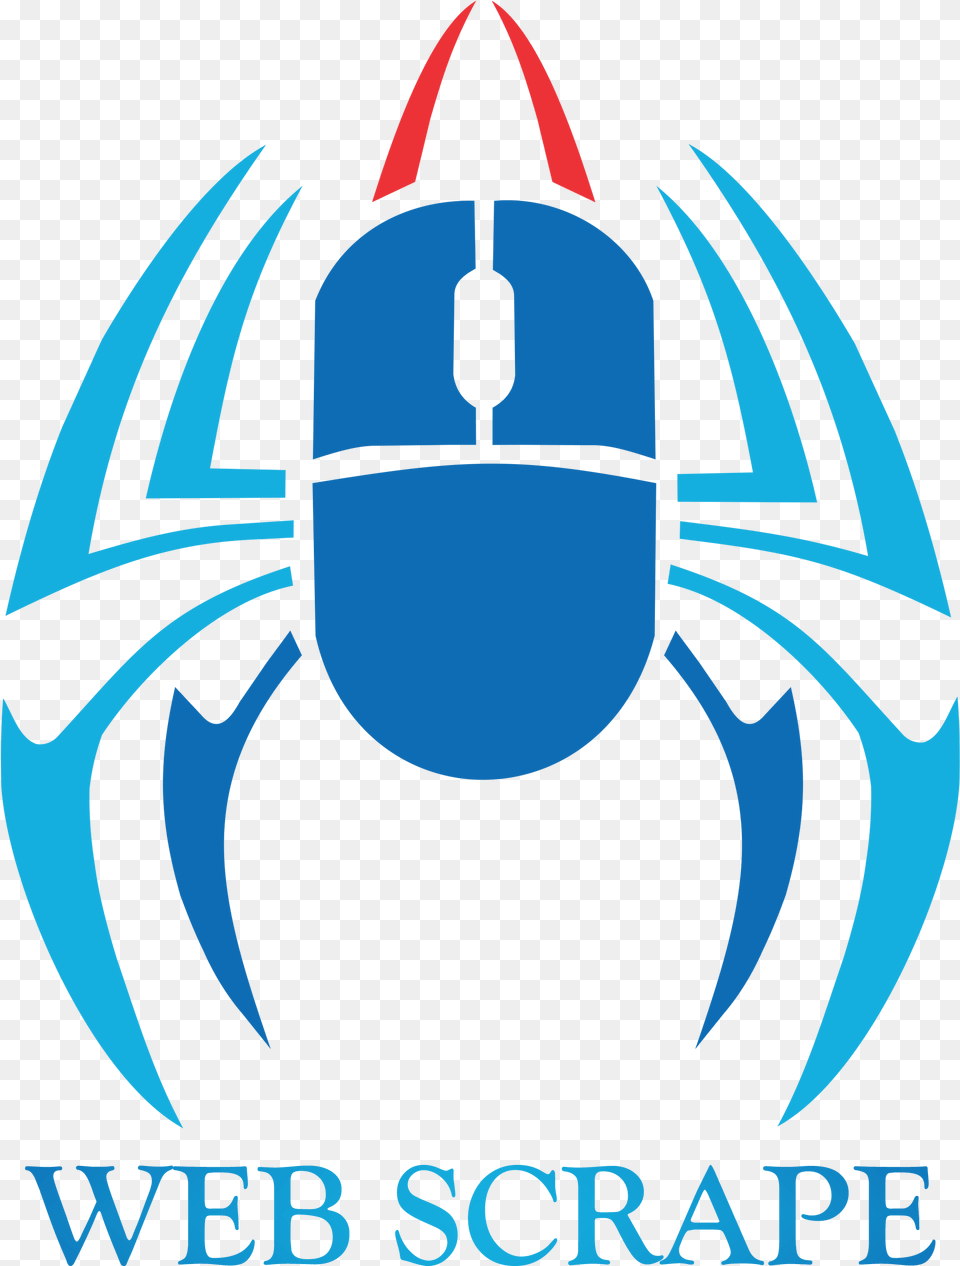 Web Scrape Ben Reilly Spiderman Logo, Electronics, Hardware, Animal, Fish Png Image